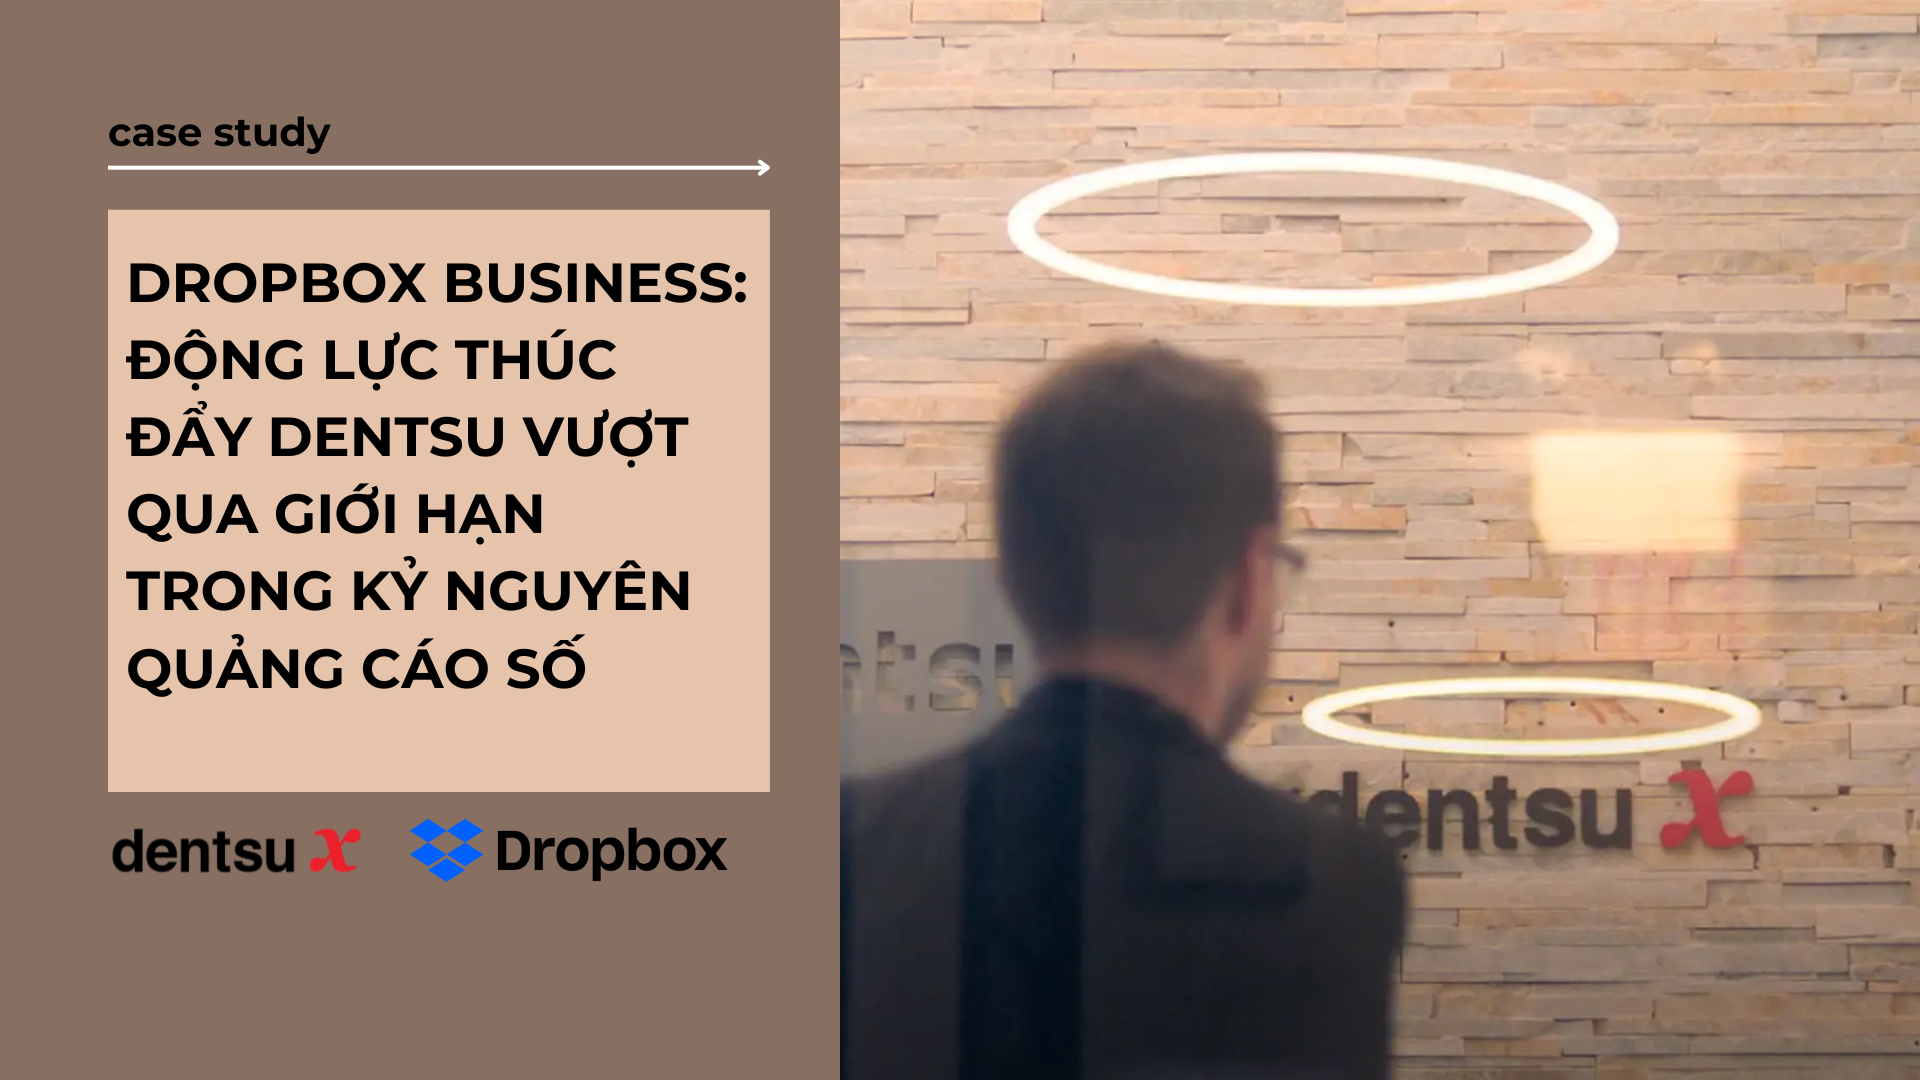 Dropbox Business: Động Lực Thúc Đẩy Dentsu Vượt Qua Giới Hạn Trong Kỷ Nguyên Quảng Cáo Số